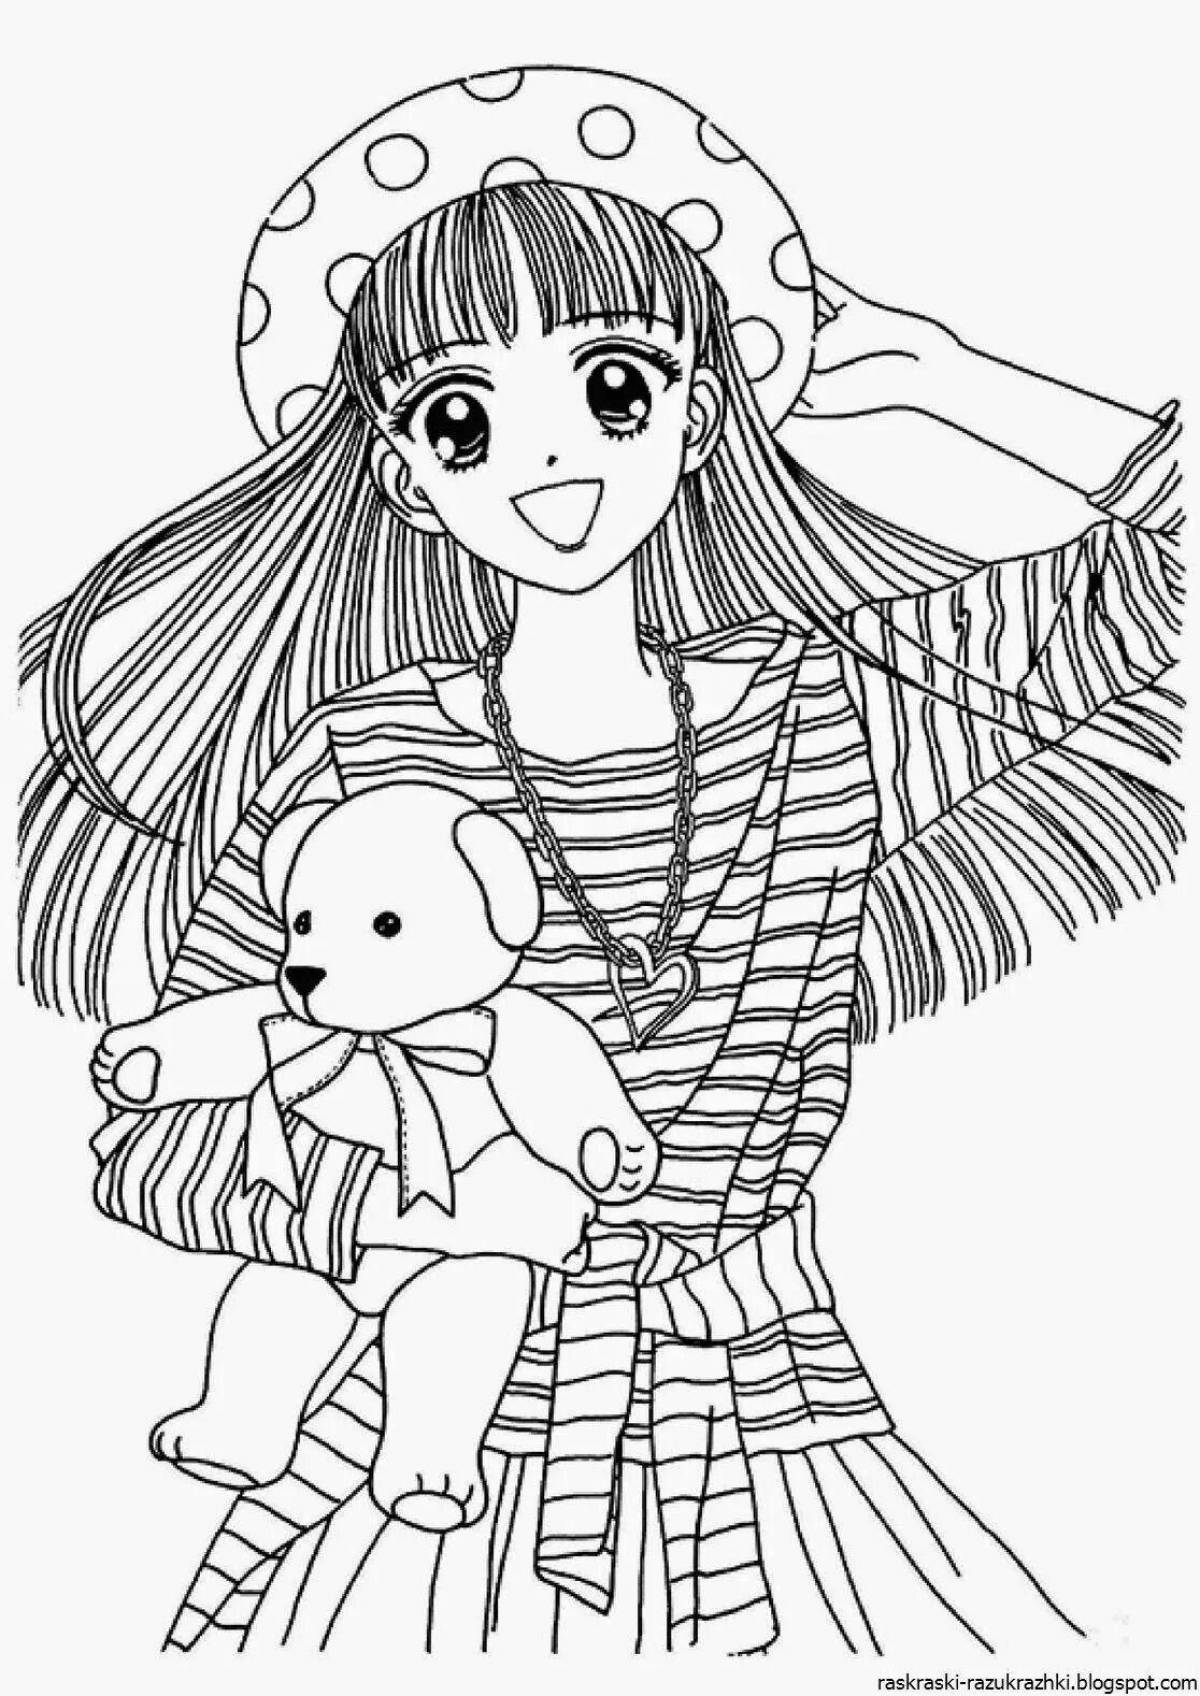 Радостная раскраска для девочек 10 лет аниме милая